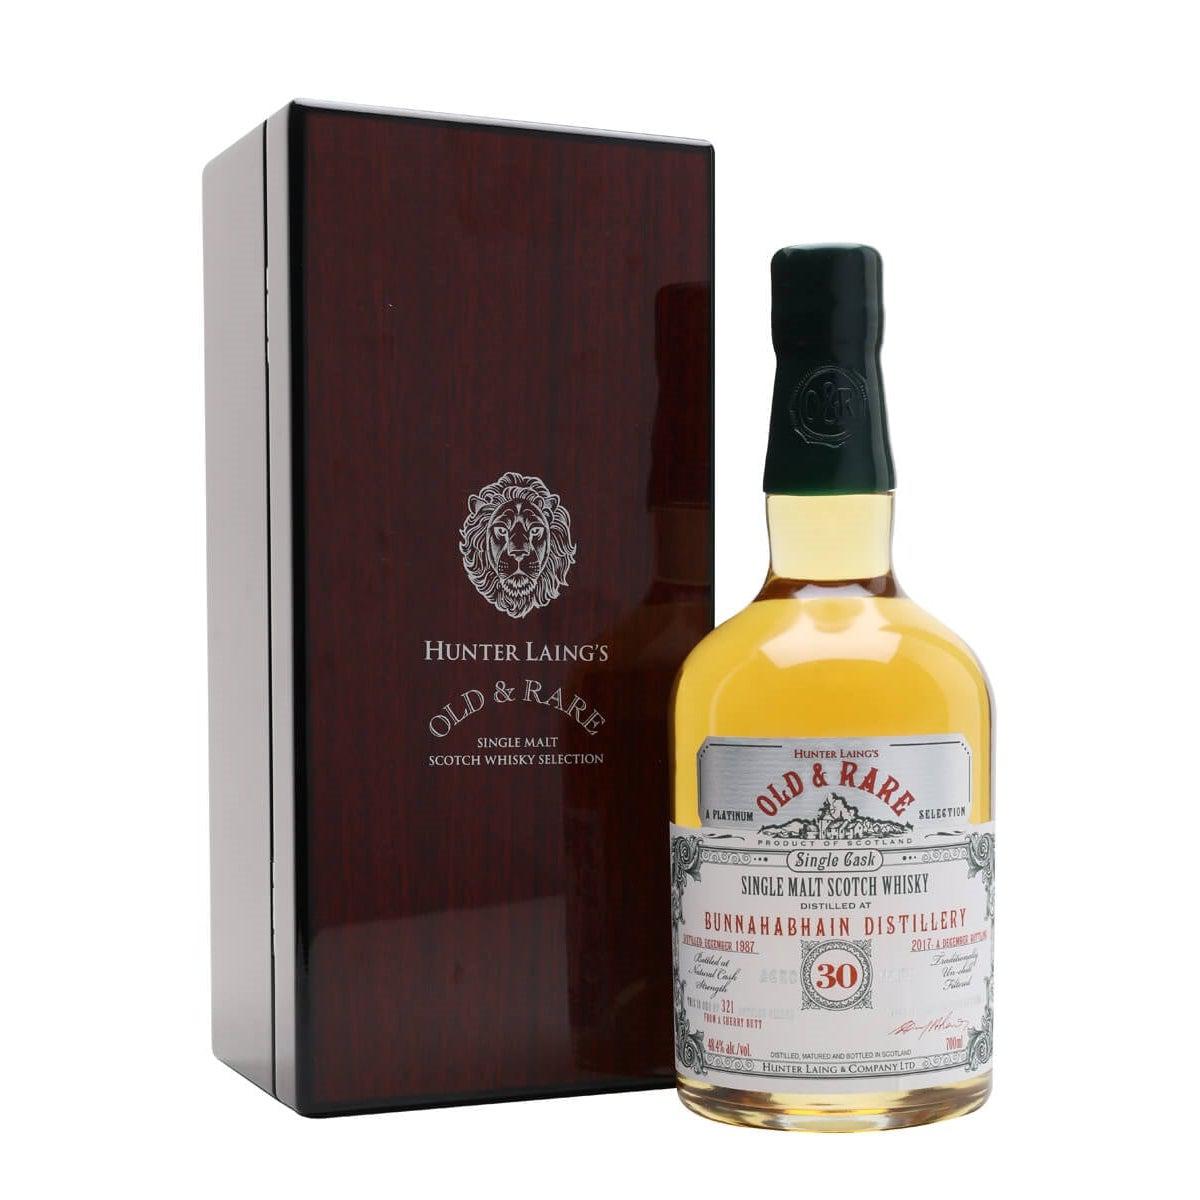 1987 Hunter Laing's Old & Rare Bunnahabhain 1987 30 Year Old Year Old Cask Single Malt Scotch Whisky 700ml